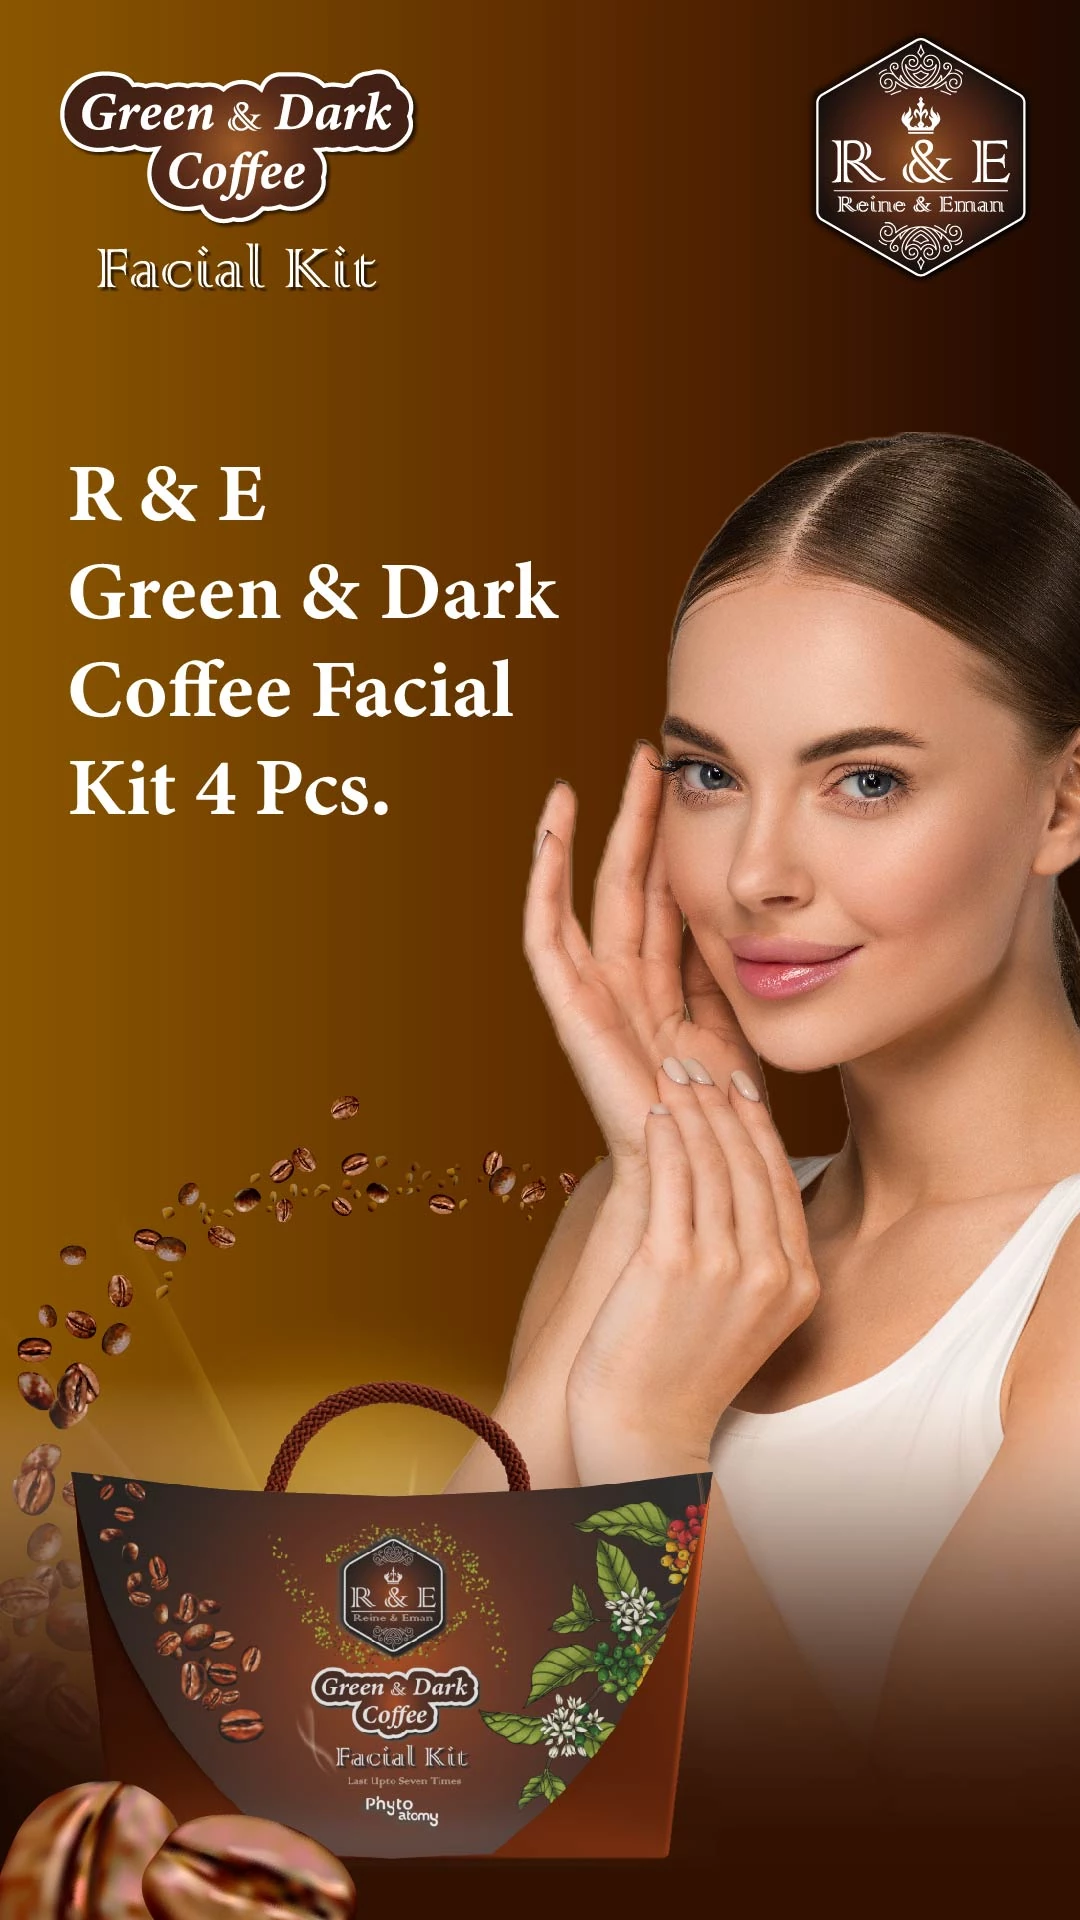 RBV B2B R & E Green & Dark Coffee Facial Kit 4 Pcs.